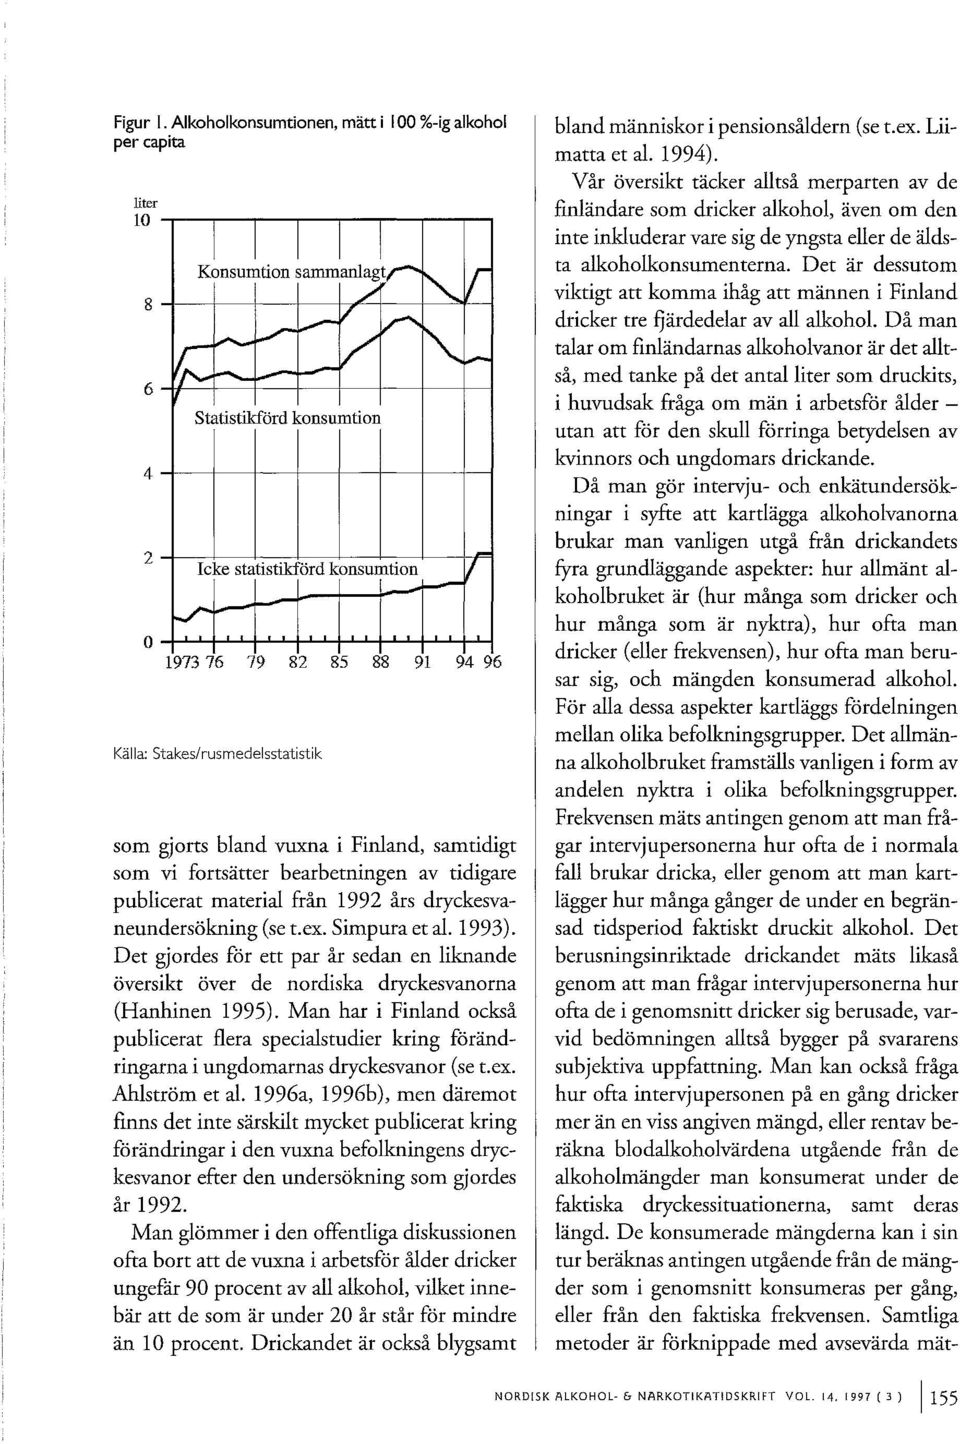 publicerat material från 1992 års dryckesvaneundersokning (se t.ex. Simpura et al. 1993). Det gjordes for ett par år sedan en liknande oversikt over de nordiska dryckesvanorna (Hanhinen 1995).